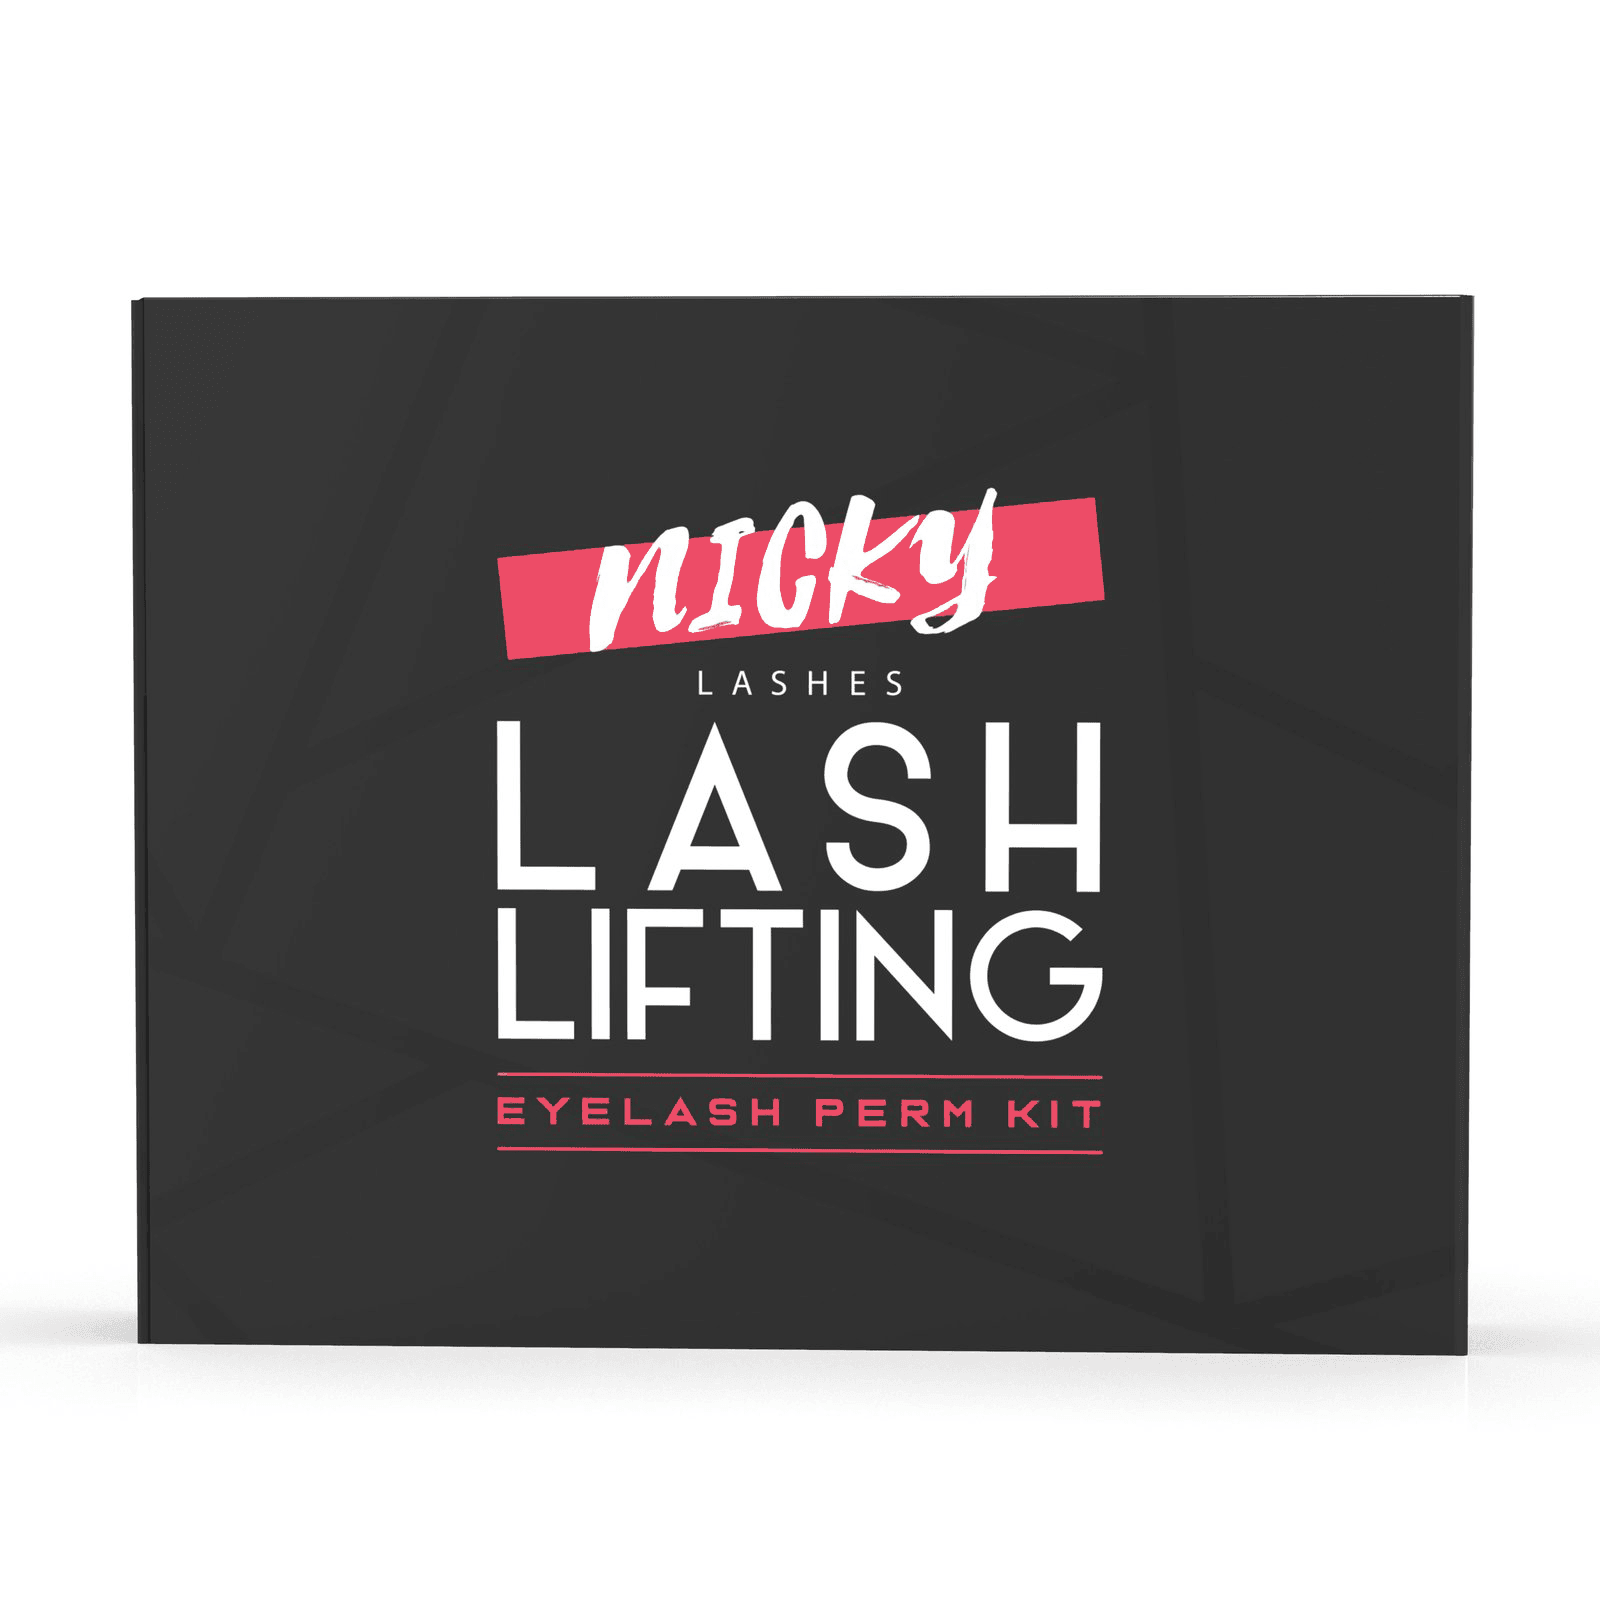 Nicky Lash Lift Kit